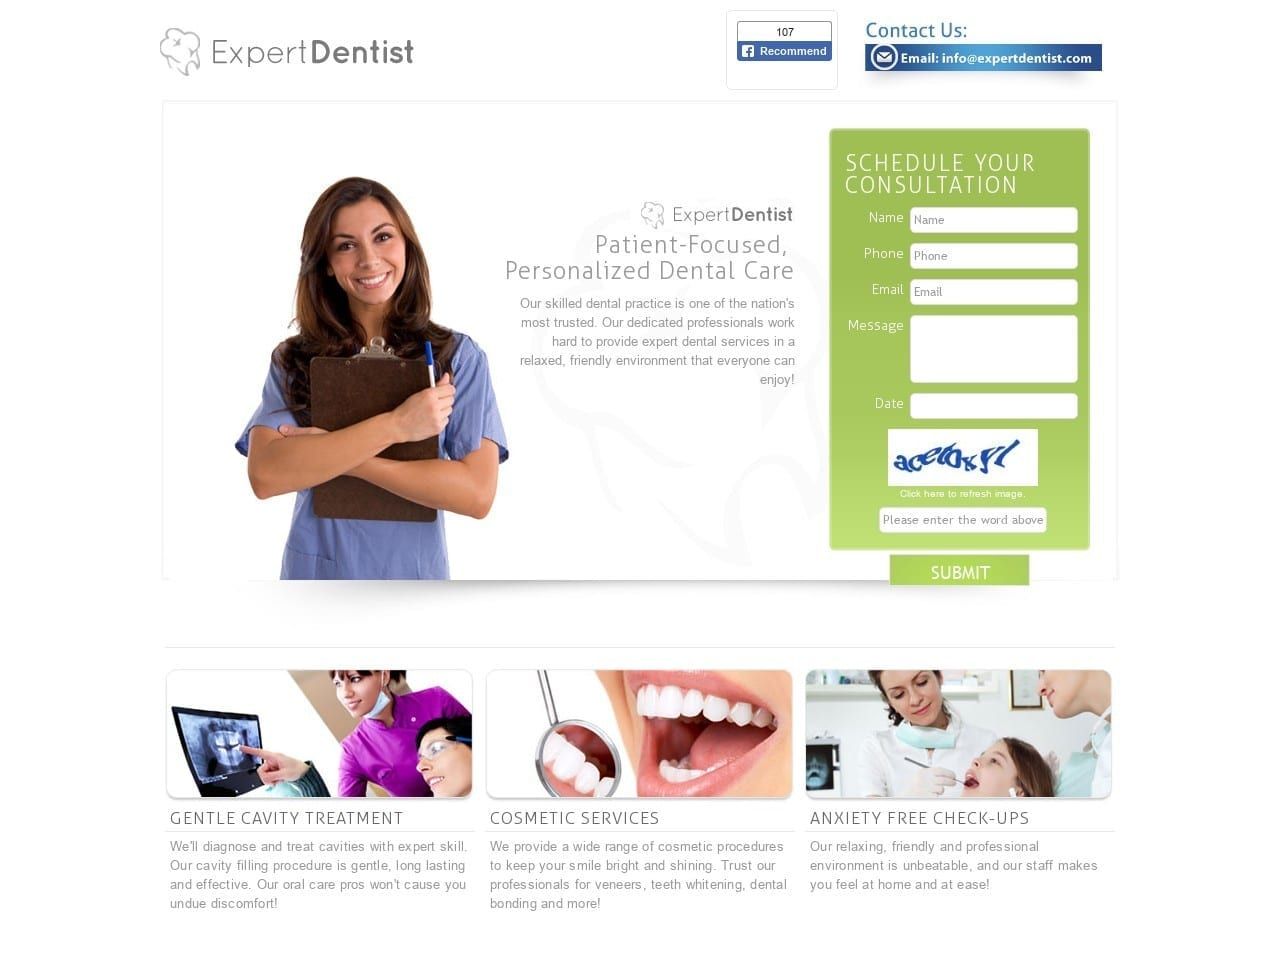 Expert Dentist Website Screenshot from expertdentist.com